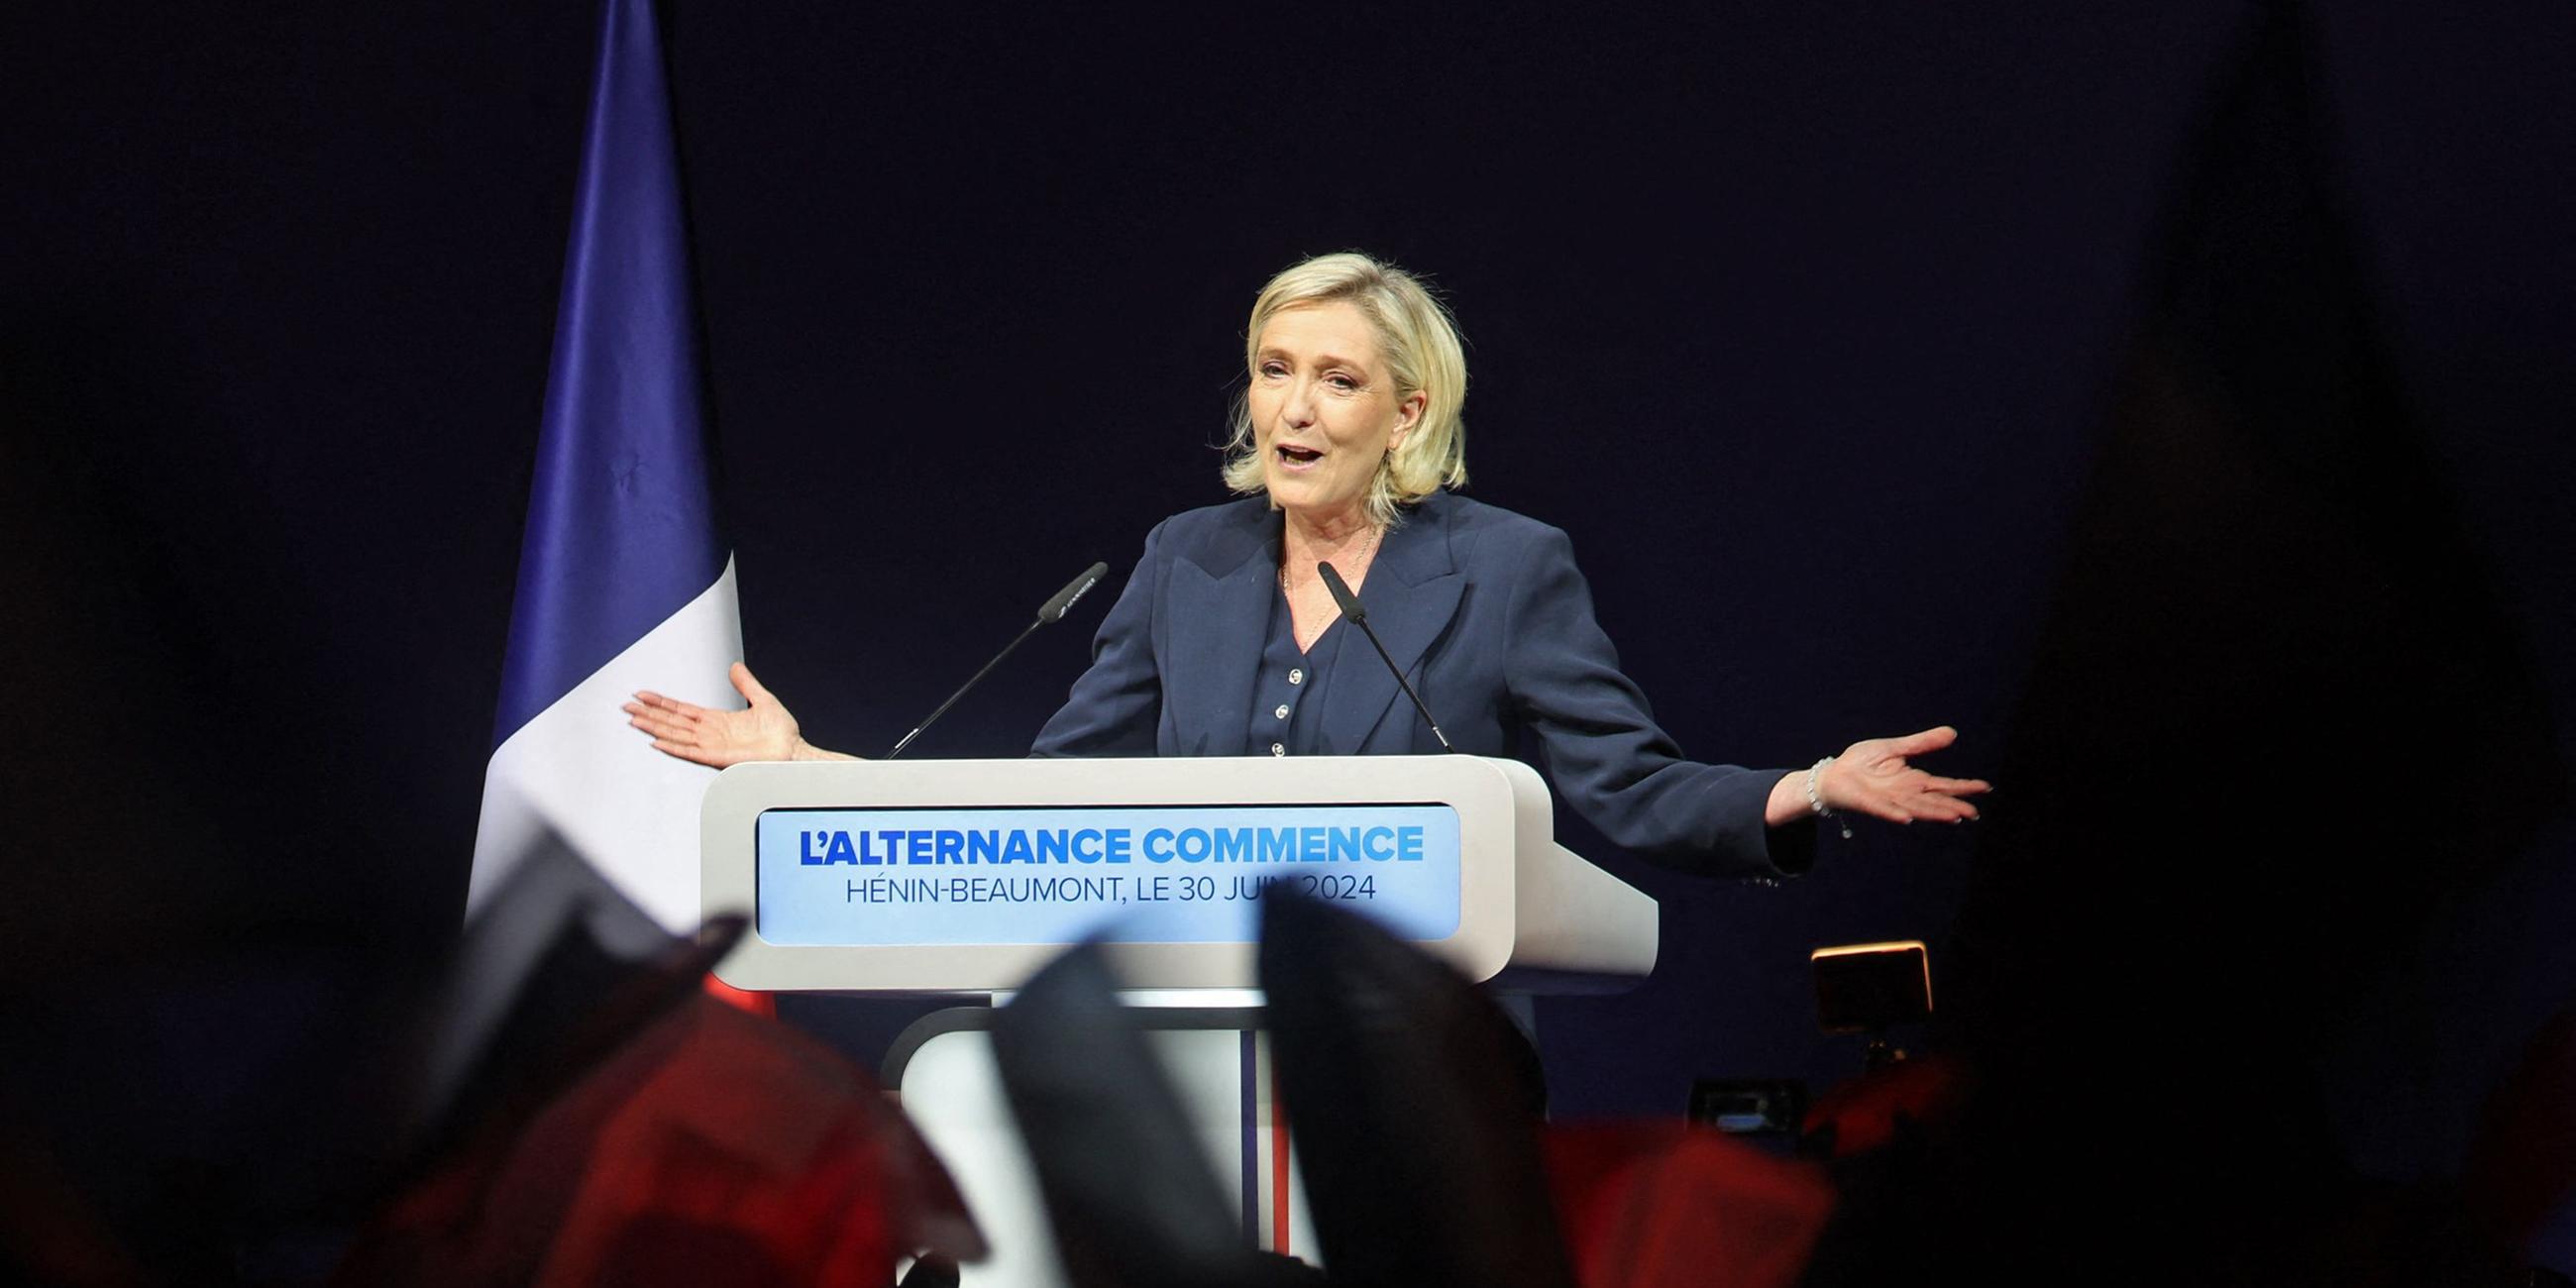 Marine Le Pen, ehemalige Präsidentin der französischen rechtsextremen Fraktion Rassemblement National (RN), hält eine Rede während des Ergebnisabends der ersten Runde der Parlamentswahlen in Henin-Beaumont, Nordfrankreich, am 30. Juni 2024.